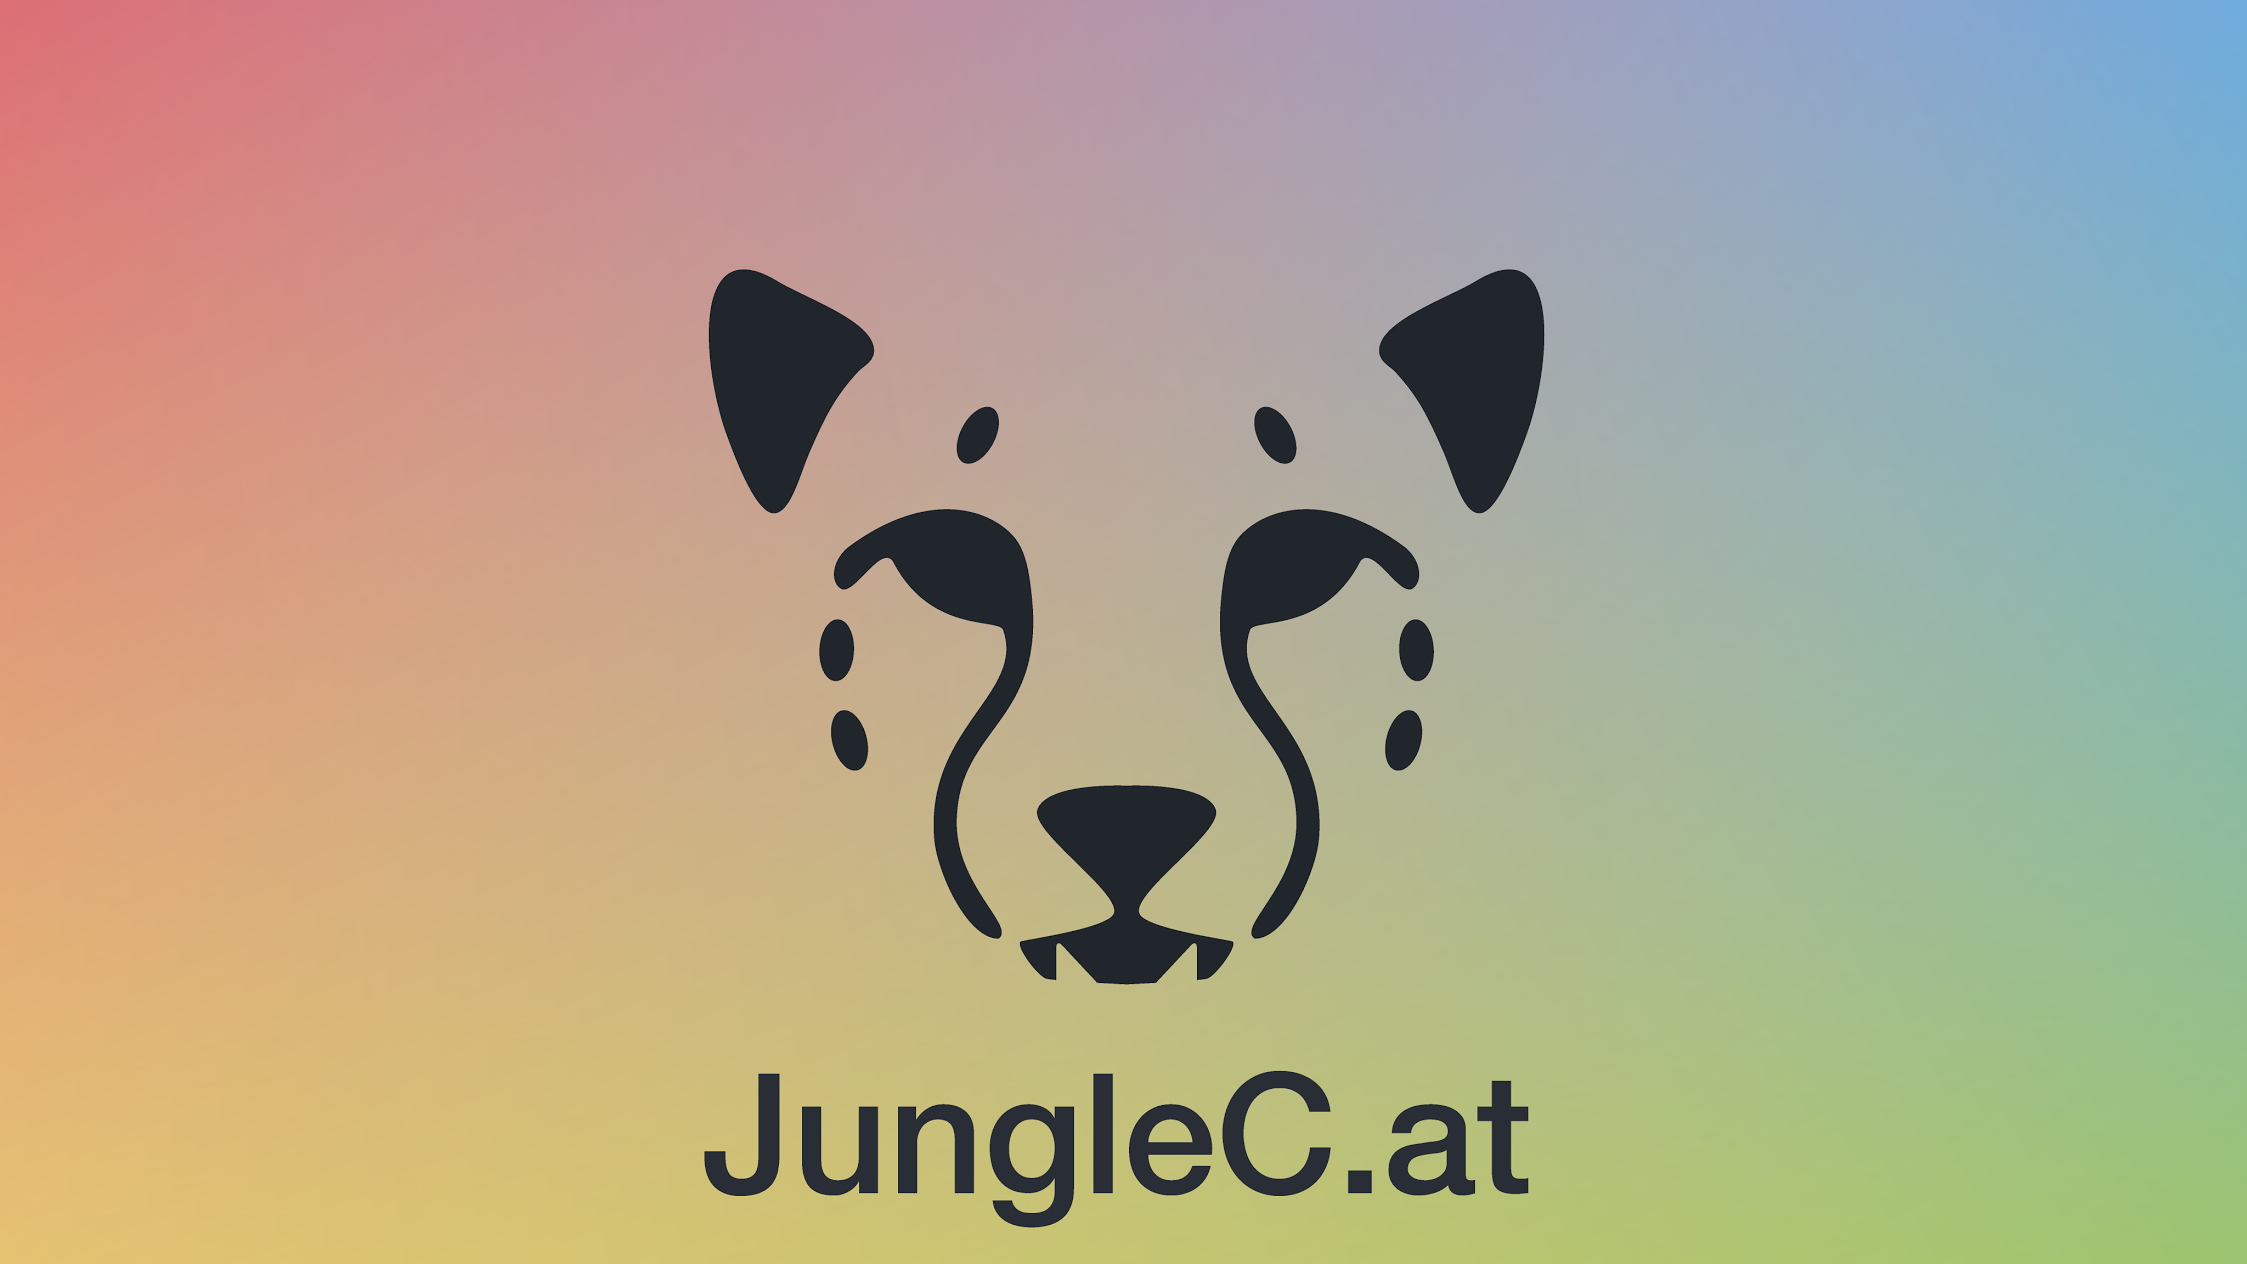 JungleCat